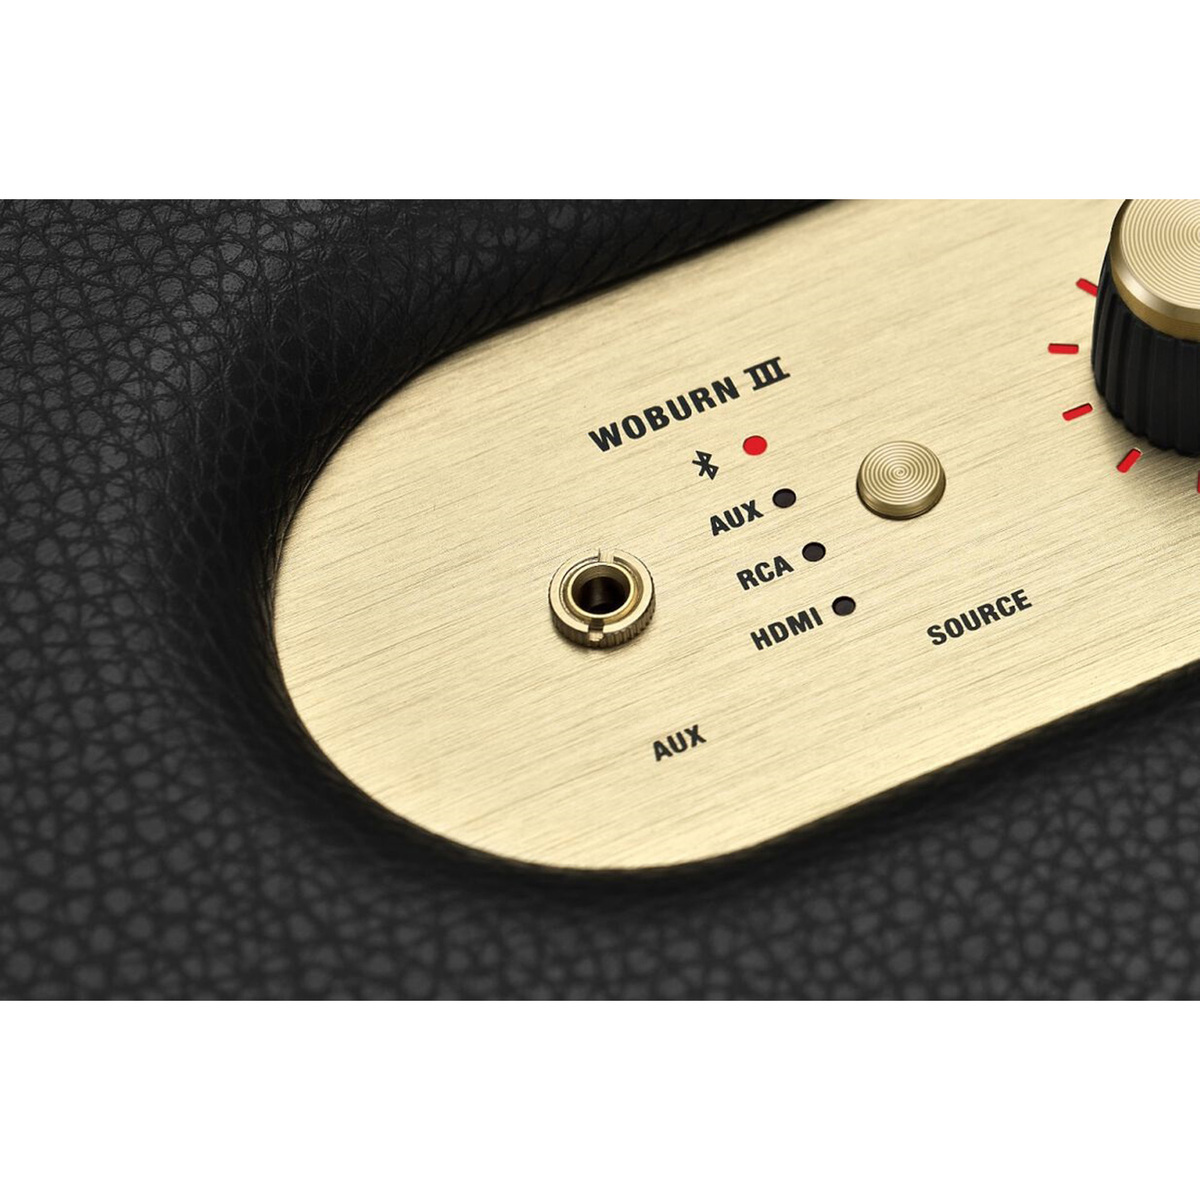 Marshall Bluetooth Speaker, Woburn III, Black